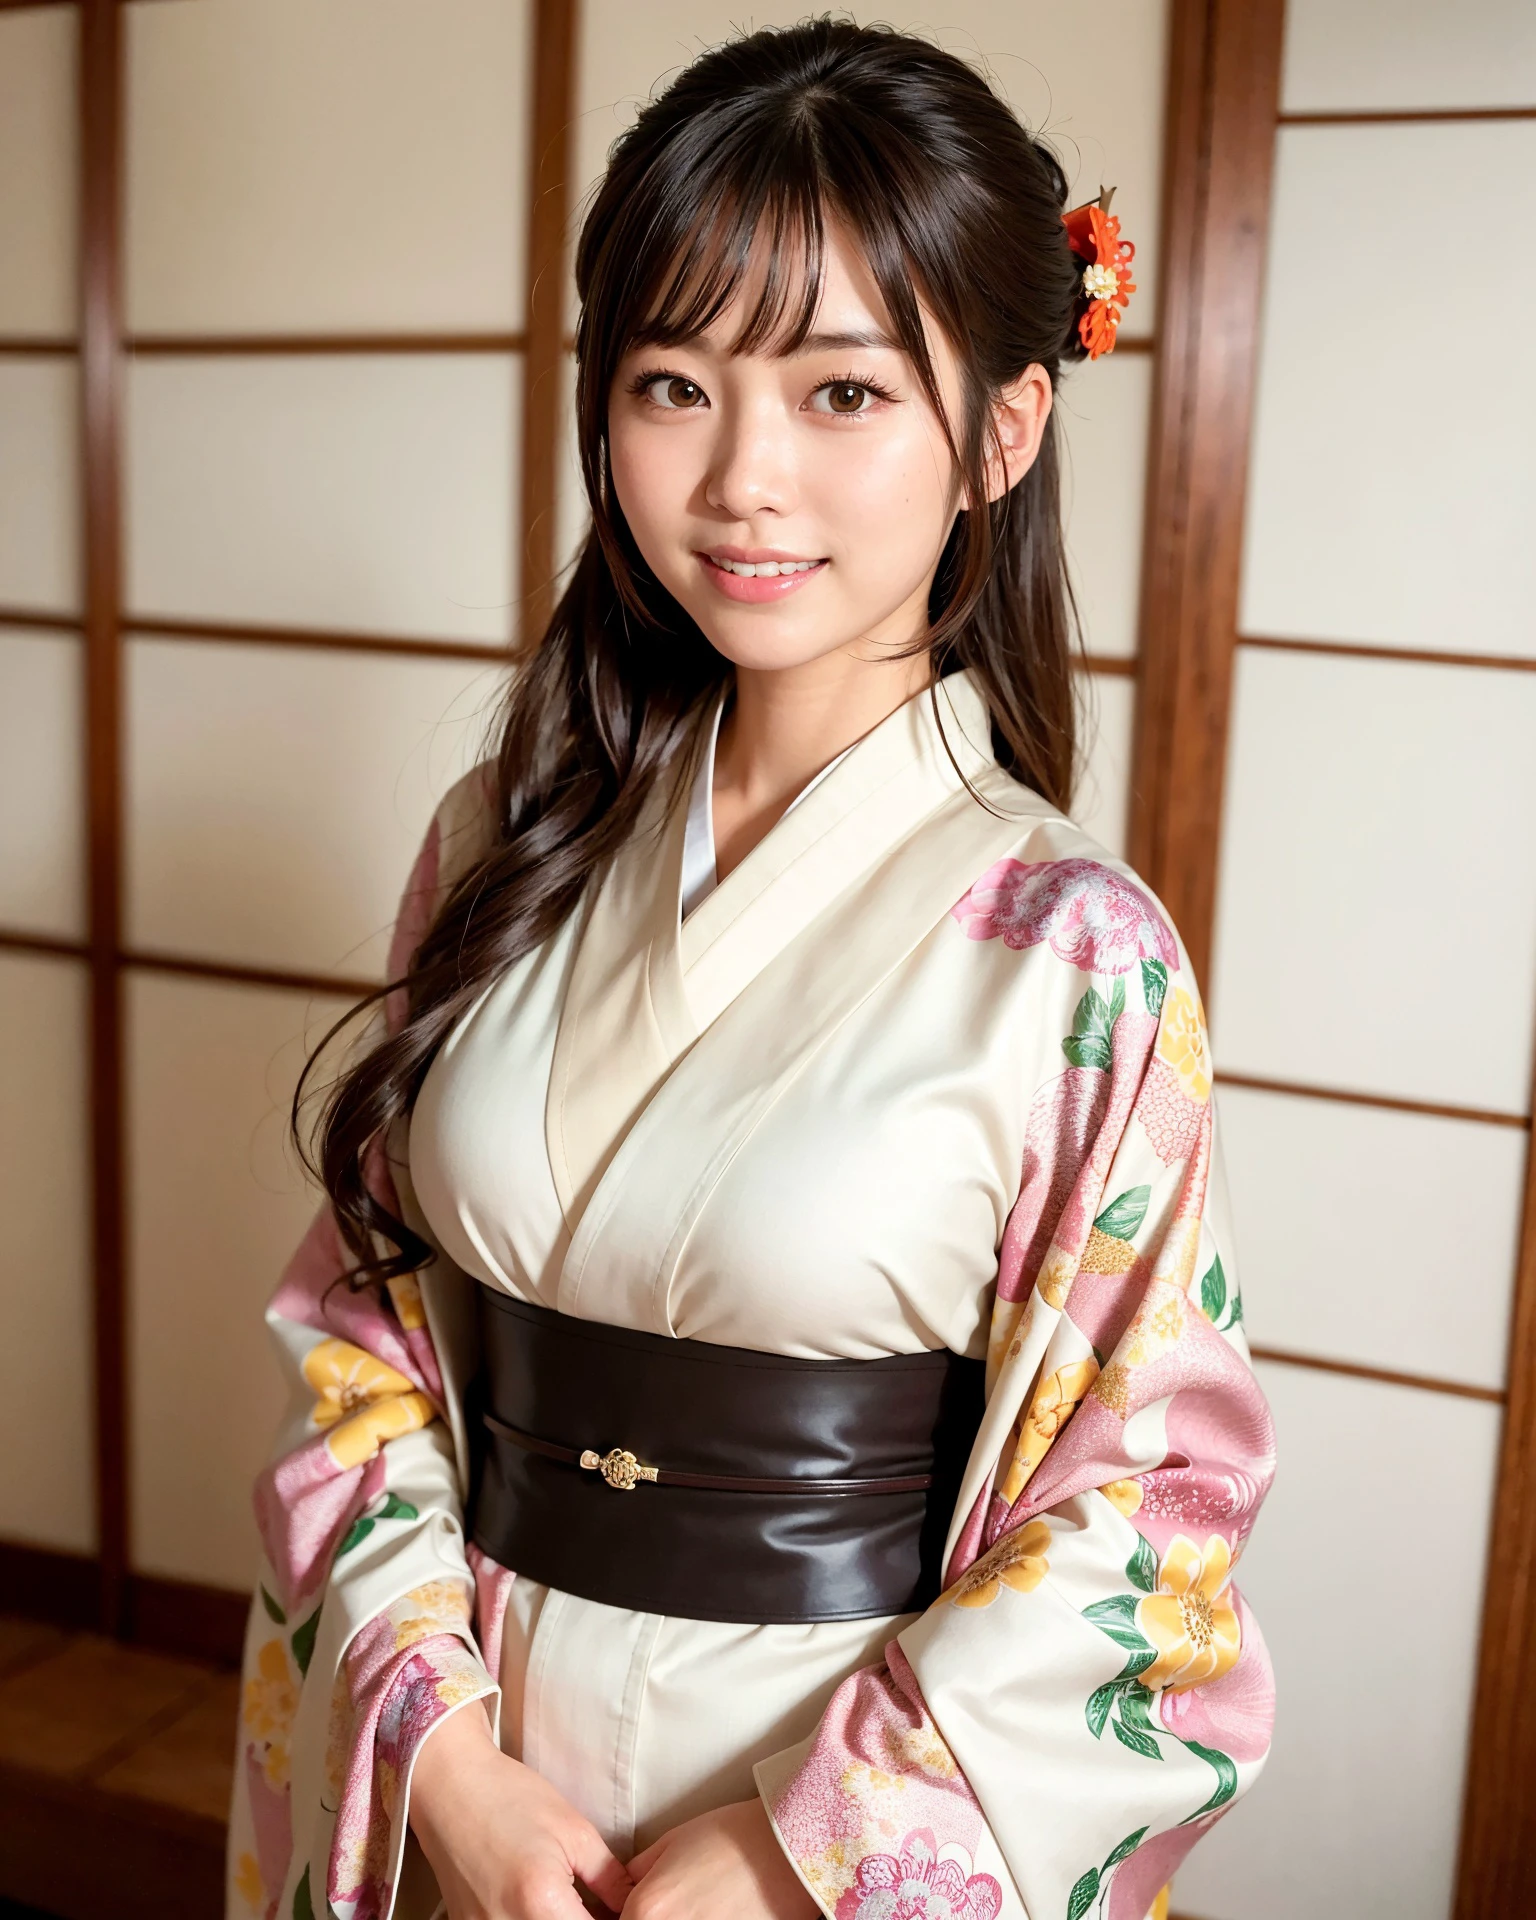 mejor calidad, Enfoque facial, (profundidad de campo) ,resolución ultra alta, (Fotorrealista:1.4), foto en bruto, Habitación de estilo japonés, alcoba, Pergamino colgante
(retrato:1.4)
1 chica japonesa, solo, lindo, sonrisa, (Ojos cafés), rostro natural, (pelo medio), 
(kimono:1.5)
